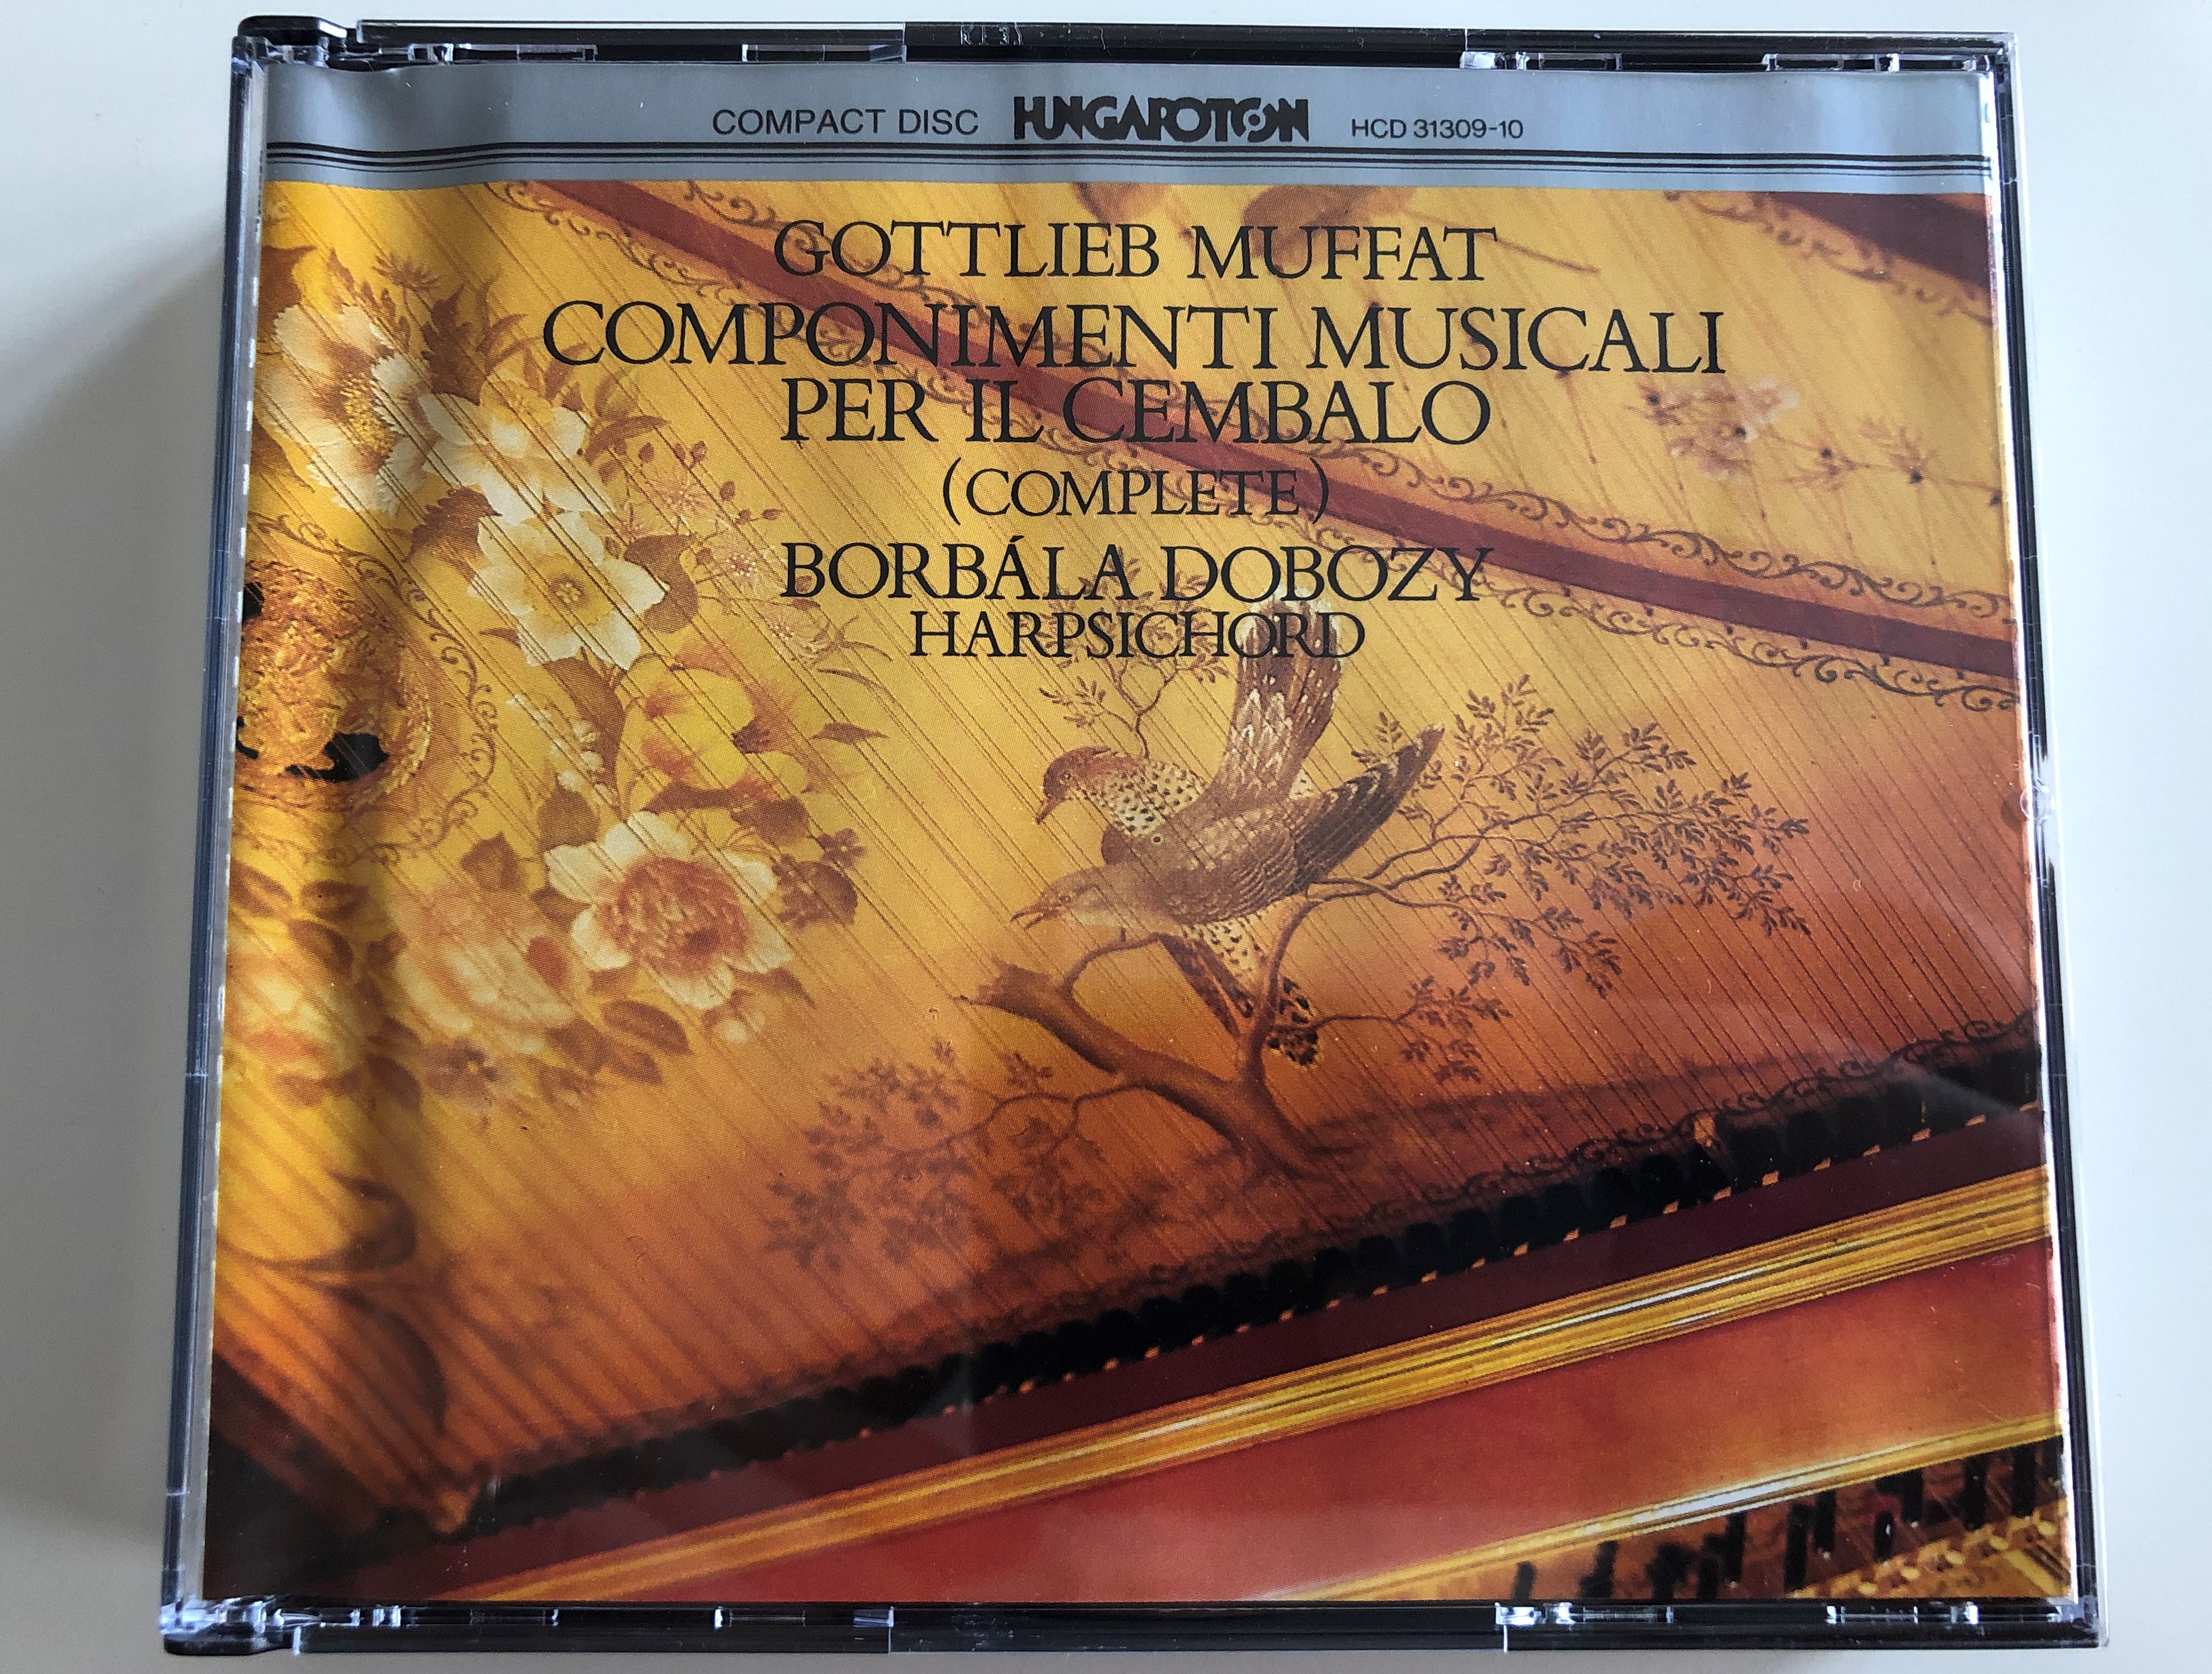 gottlieb-muffat-componimenti-musicali-per-il-cembalo-complete-borbala-dobozy-harpsichord-hungaroton-2x-audio-cd-1992-stereo-hcd-31309-10-1-.jpg